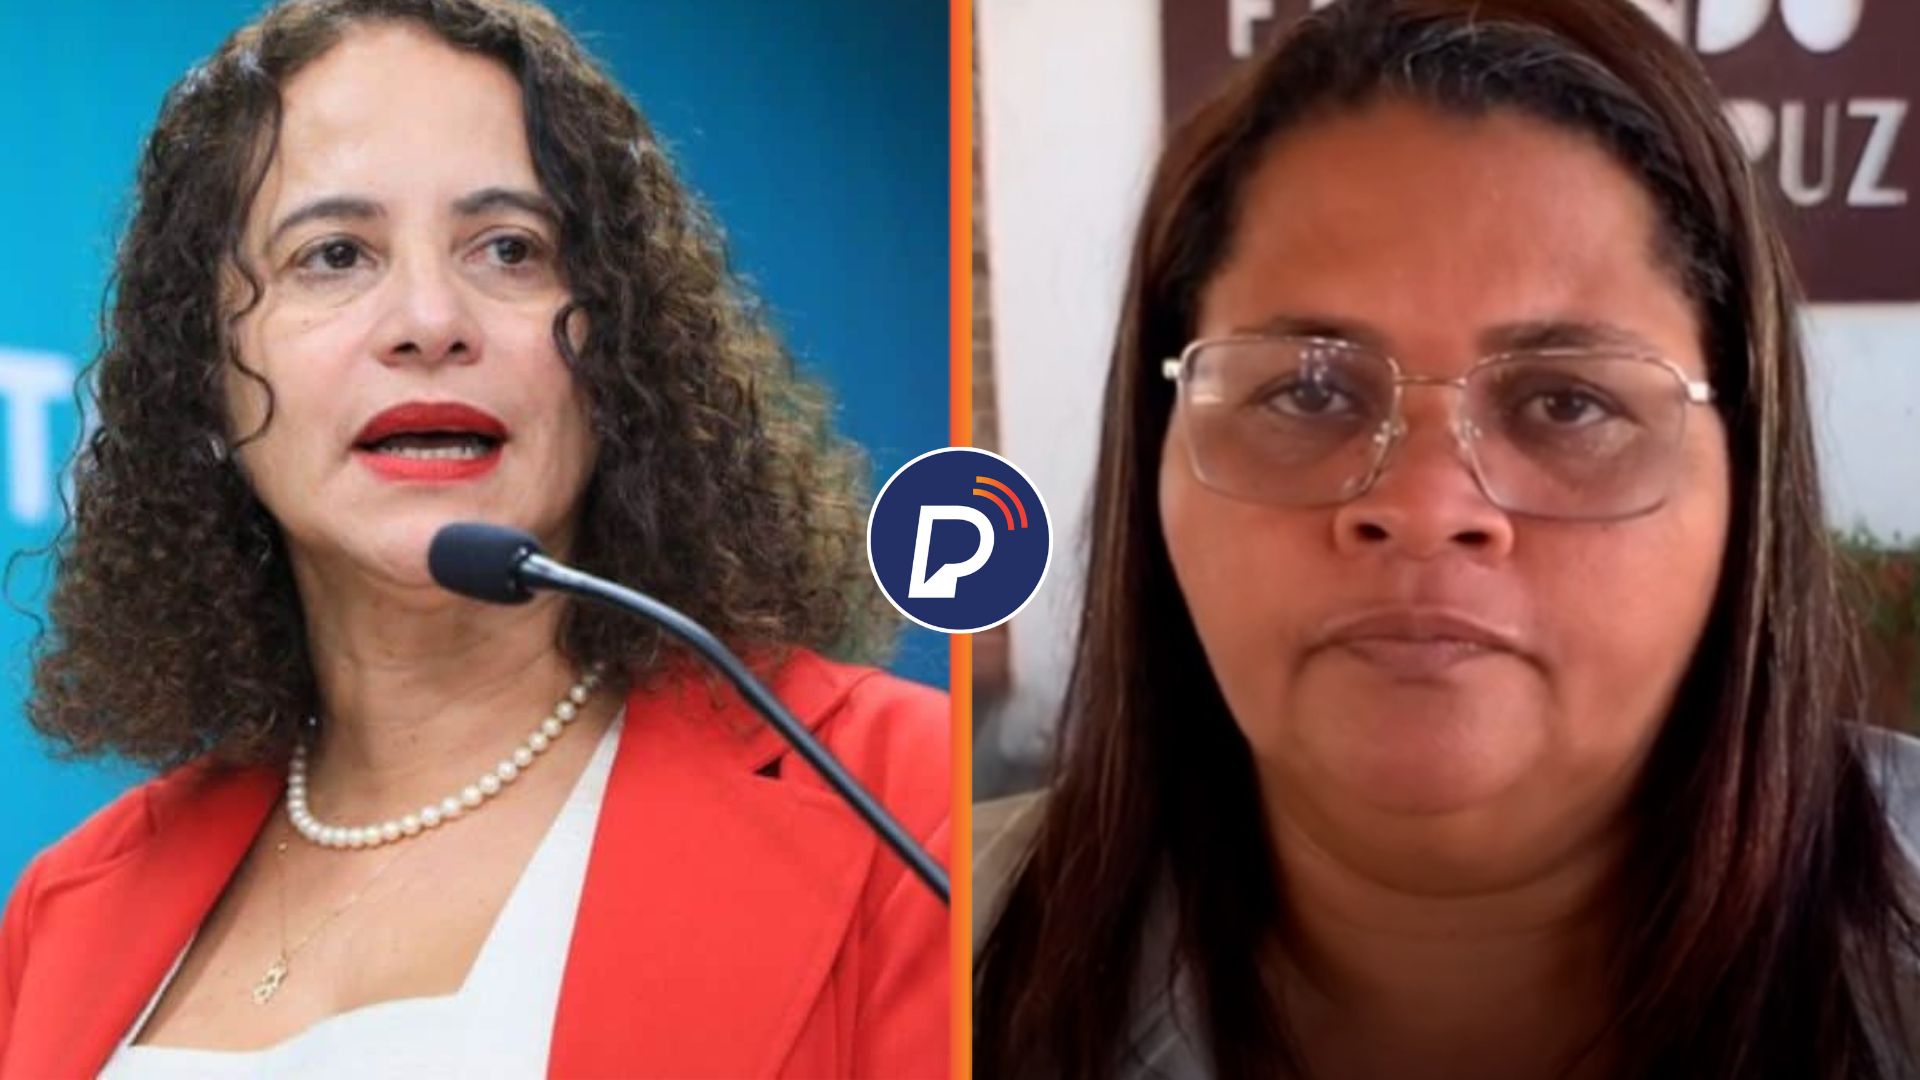 Ministra da Ciência se solidariza com vereadora de Olinda que foi xingada por parlamentar.